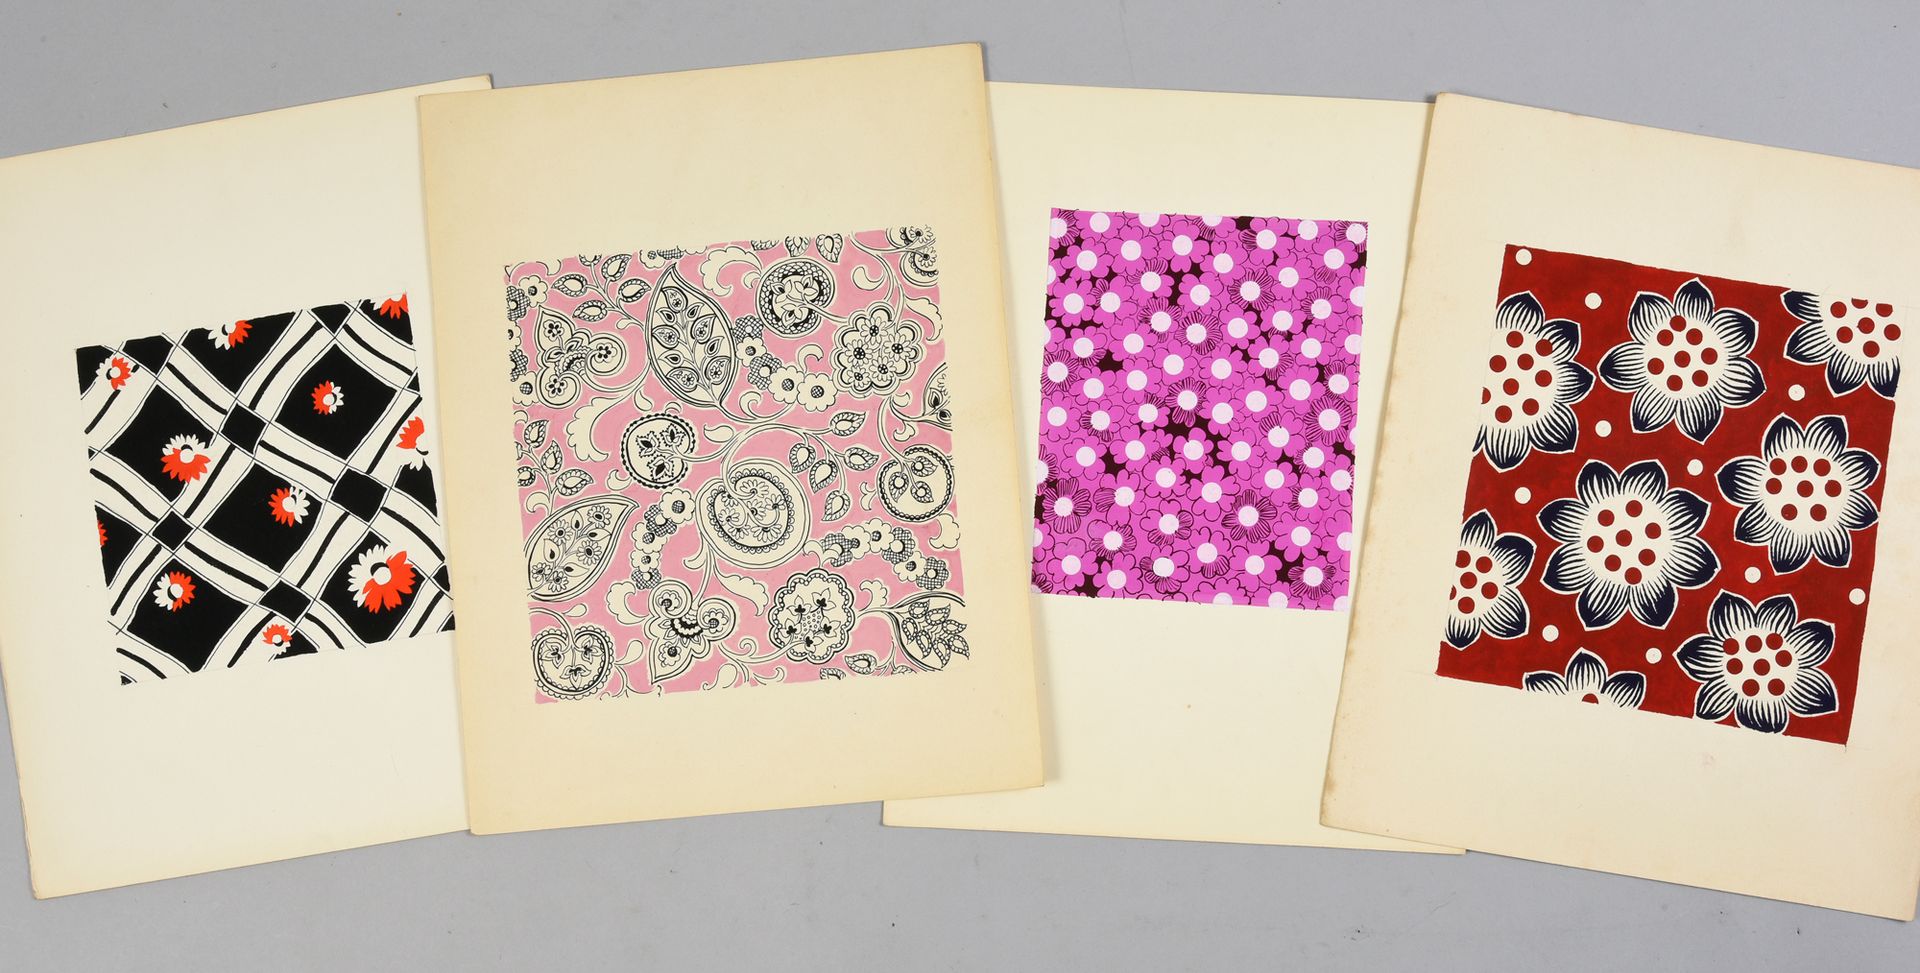 Null 一组时尚织物模型，1950-1970年左右，纸上水粉和墨水；主要是风格化的花卉构图，包括紫丁香、银杏叶或羊脂玉，一些构图在压花纸上。
大约50张画，从&hellip;